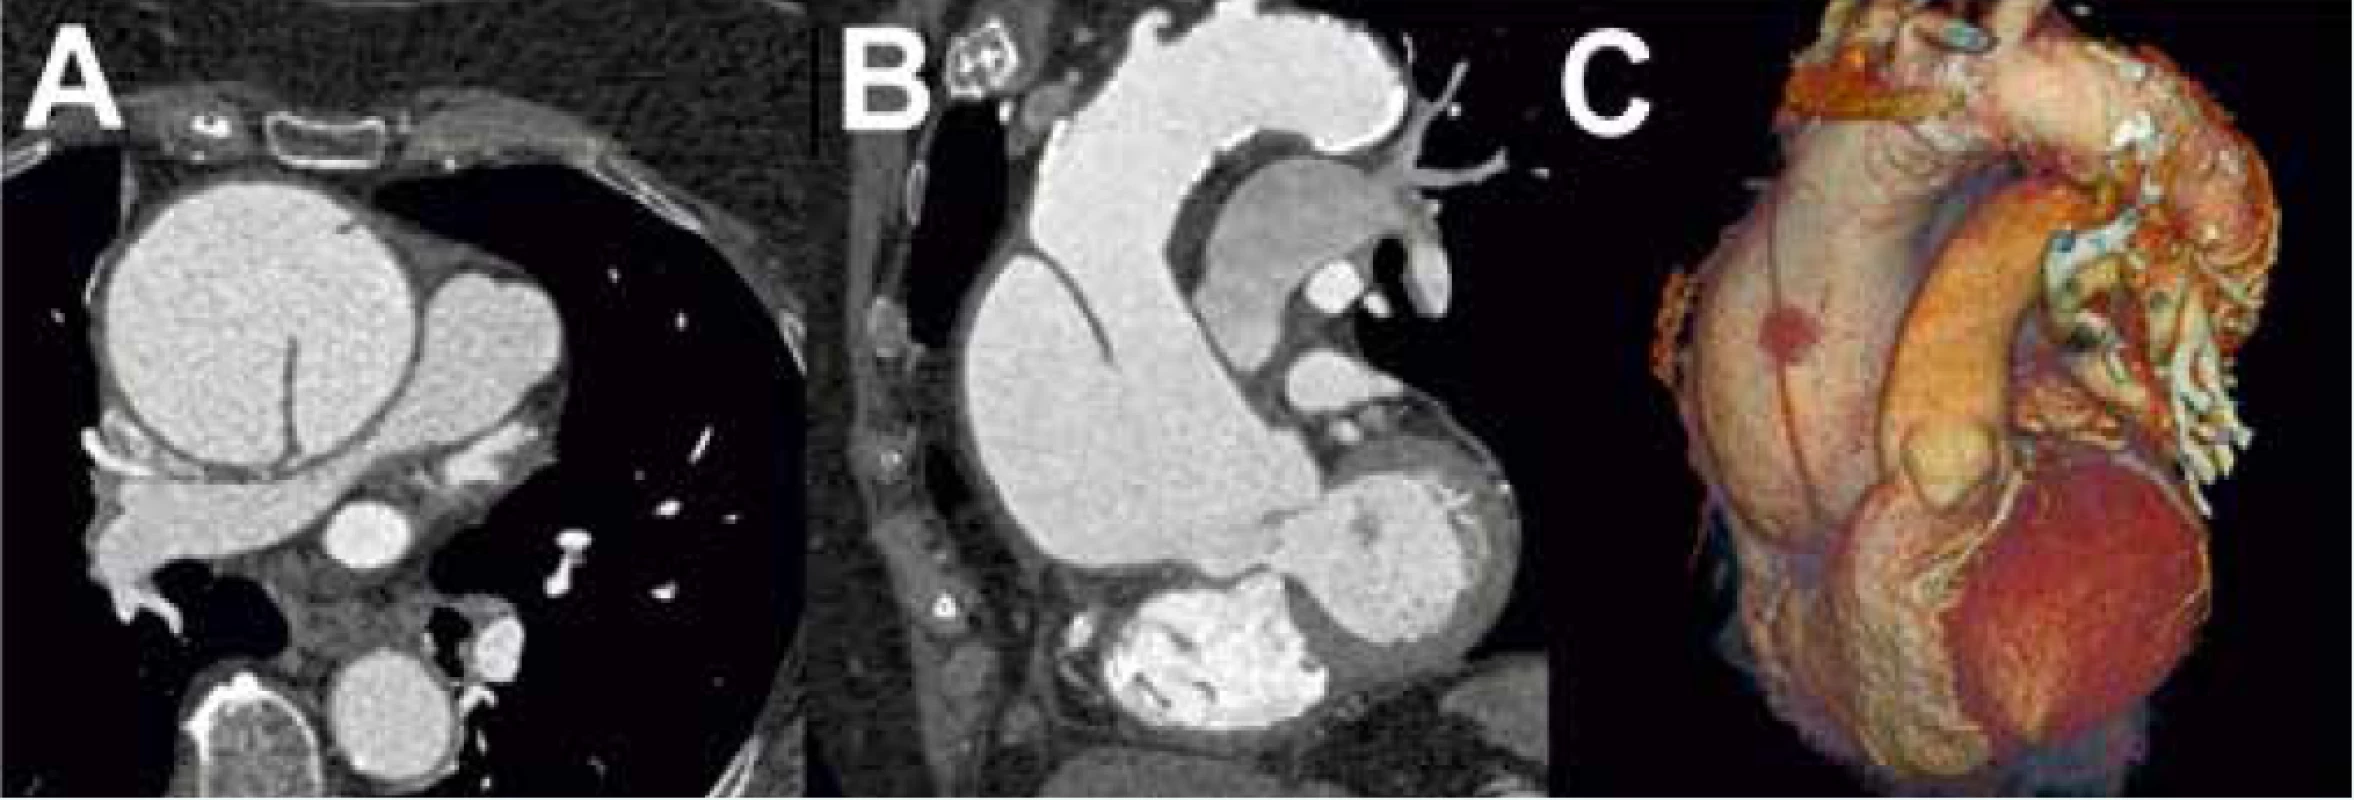 Akutní aortální disekce typu A dle Stanfordské klasifikace při vyšetření CTAG s dobře patrným
intimálním flapem